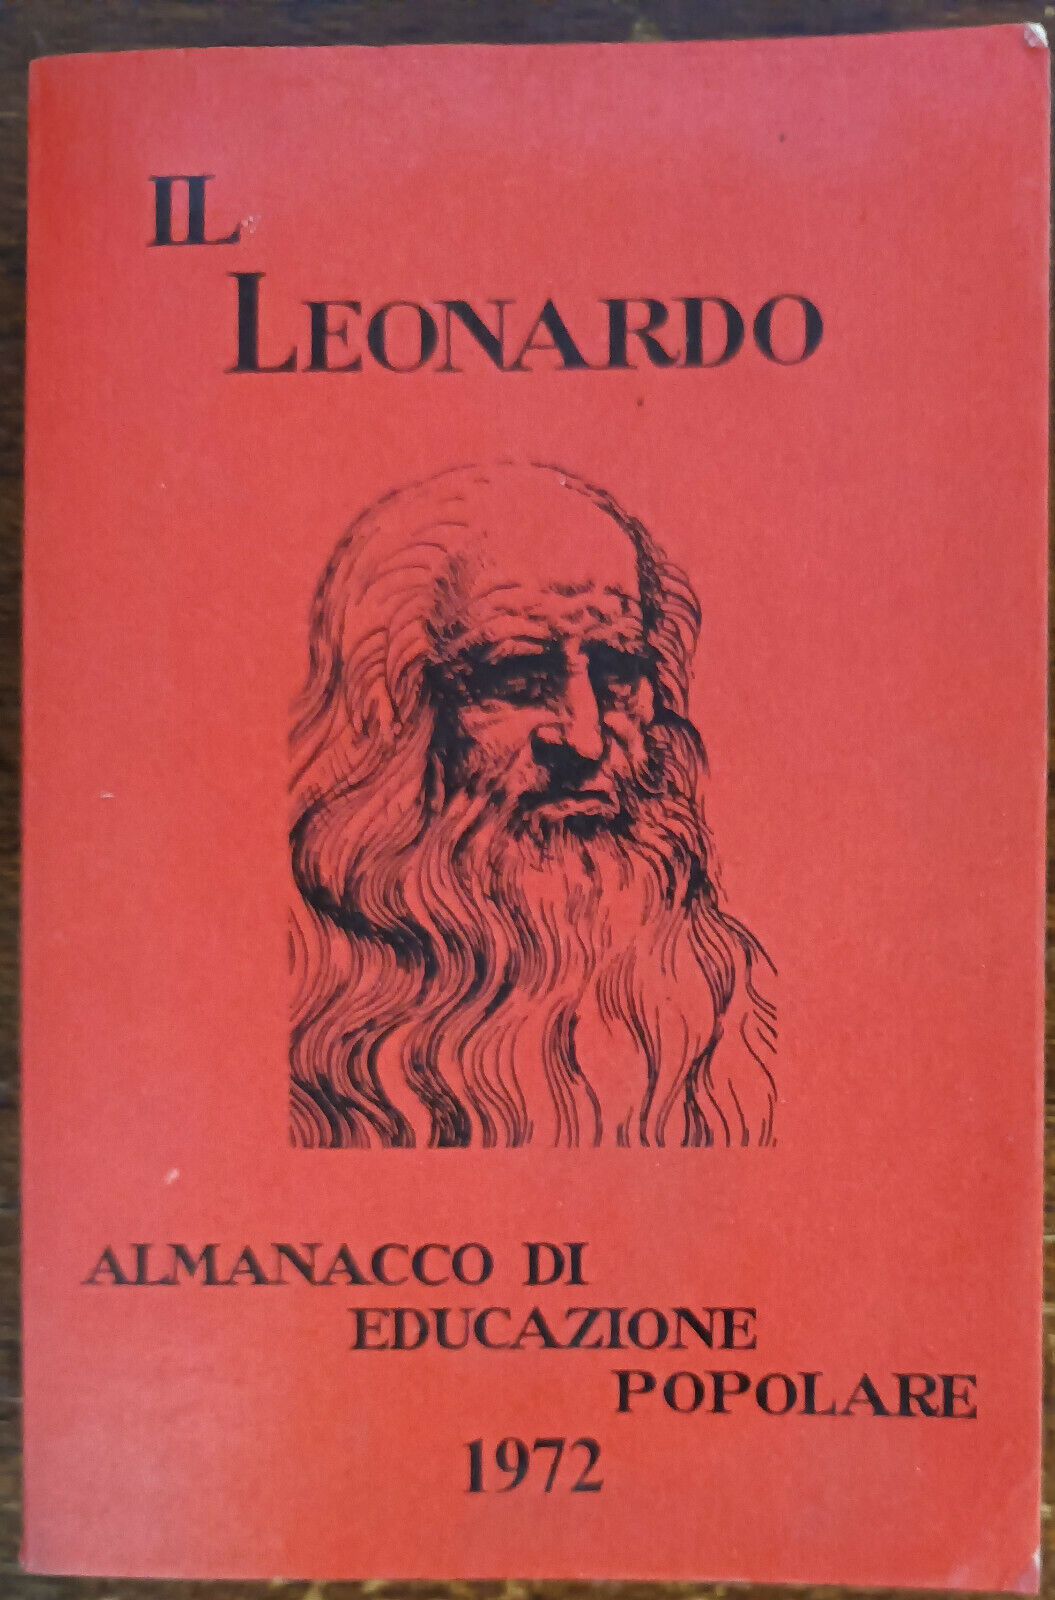 Il Leonardo - AA. VV. - Biblioteche popolari e scolastiche, 1972 - A